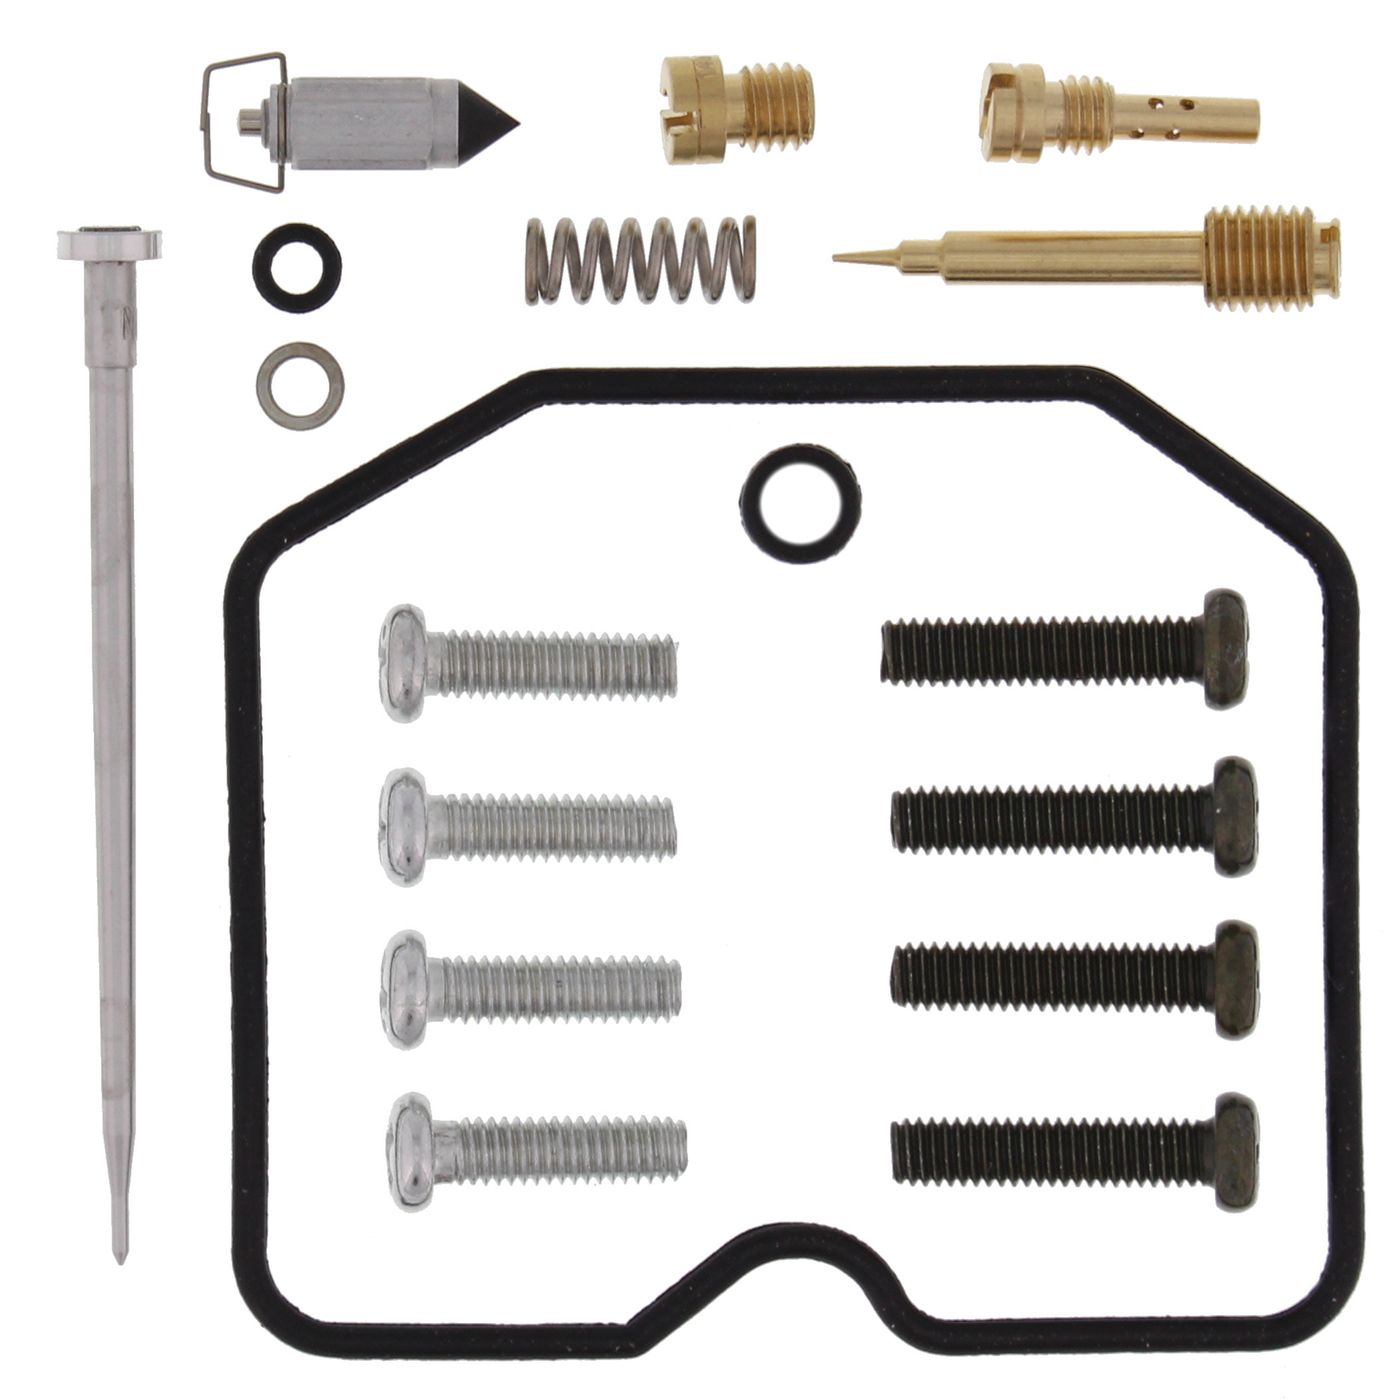 Wrp Carb Repair Kits - WRP261099 image